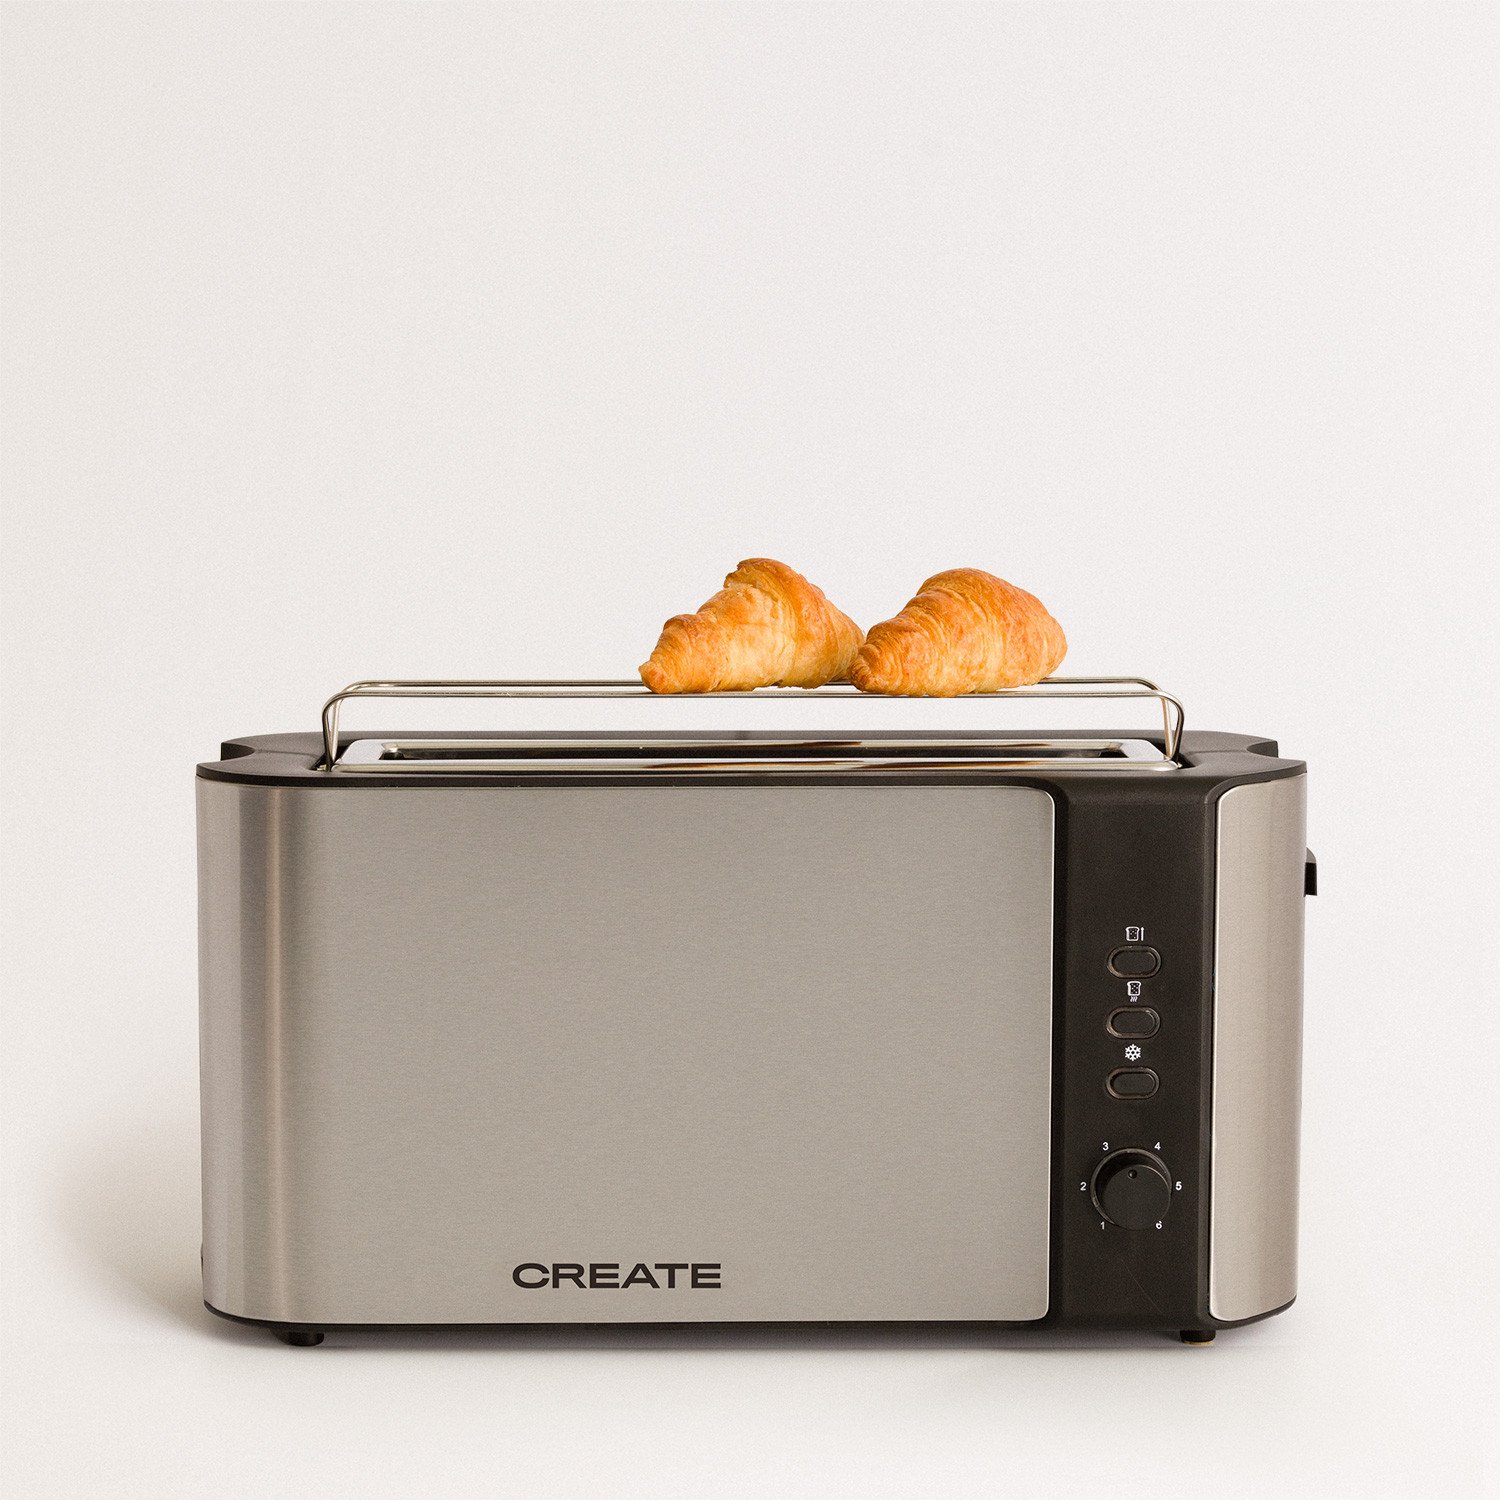 IKOHS Toast Retro Tostapane automatico per fette grandi nero termostato finiture in acciaio inox vassoio raccoglibriciole 6 livelli di potenza 850 W vassoio raccoglibriciole 